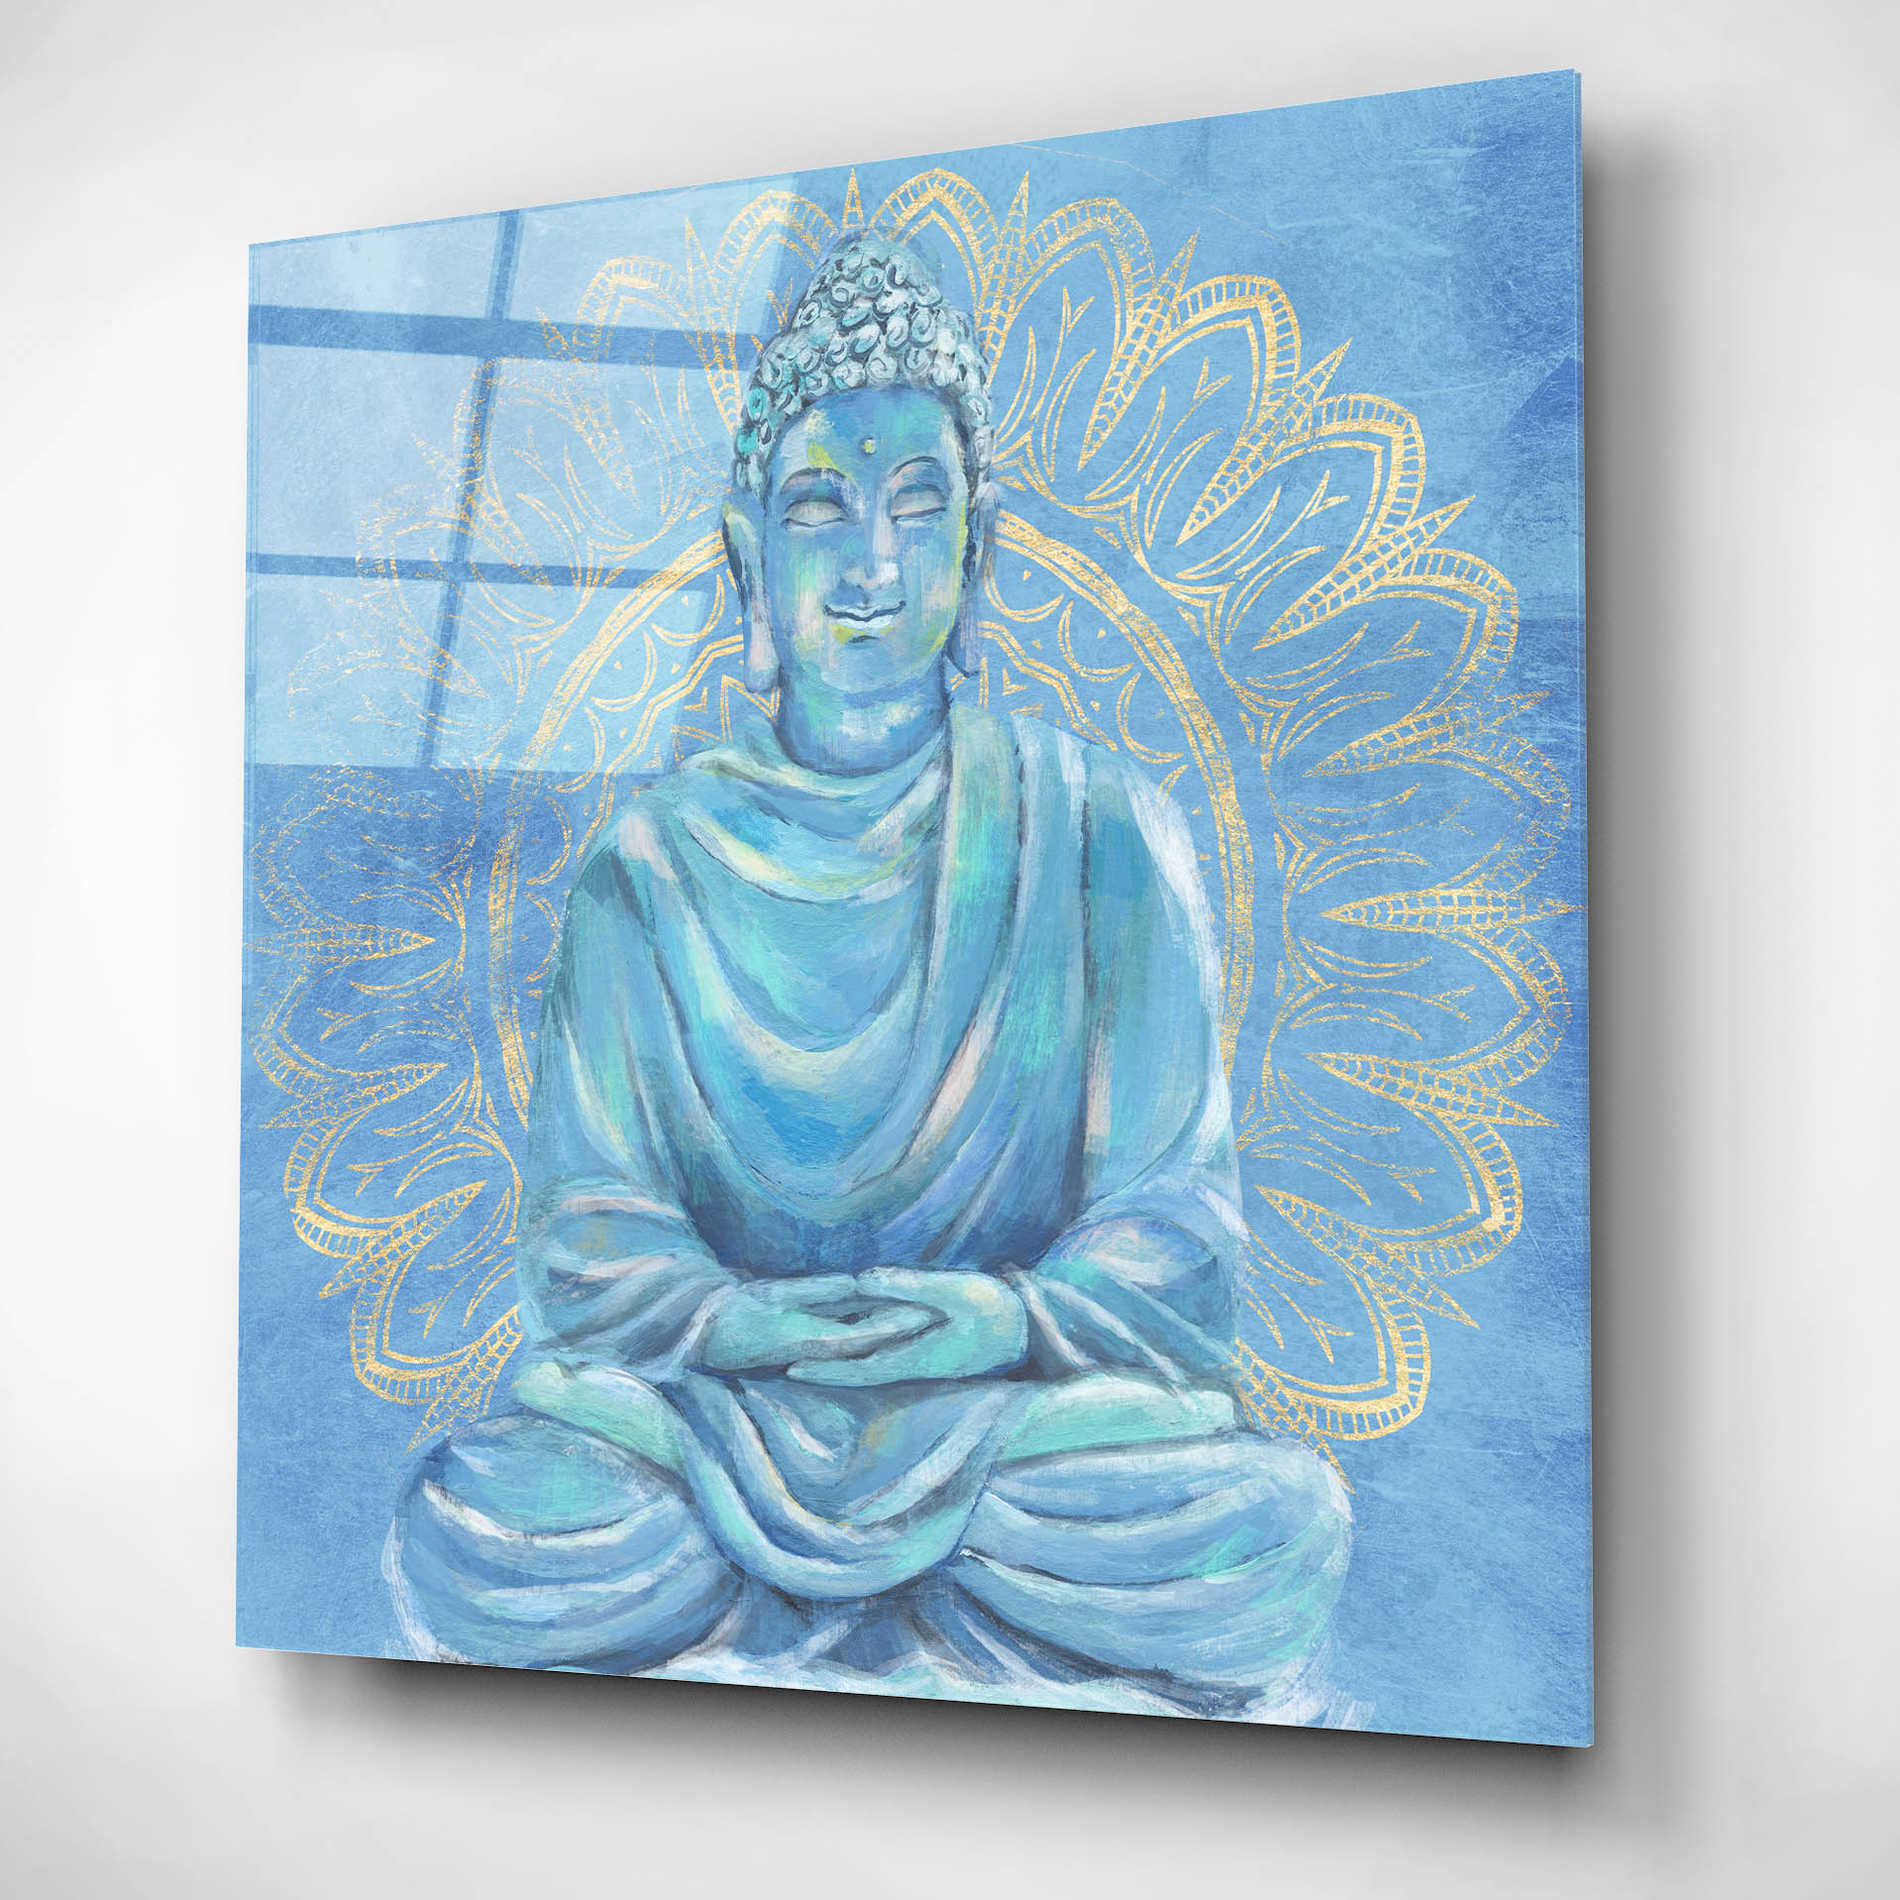 Epic Art 'Buddha on Blue I' by Annie Warren, Acrylic Glass Wall Art,12x12